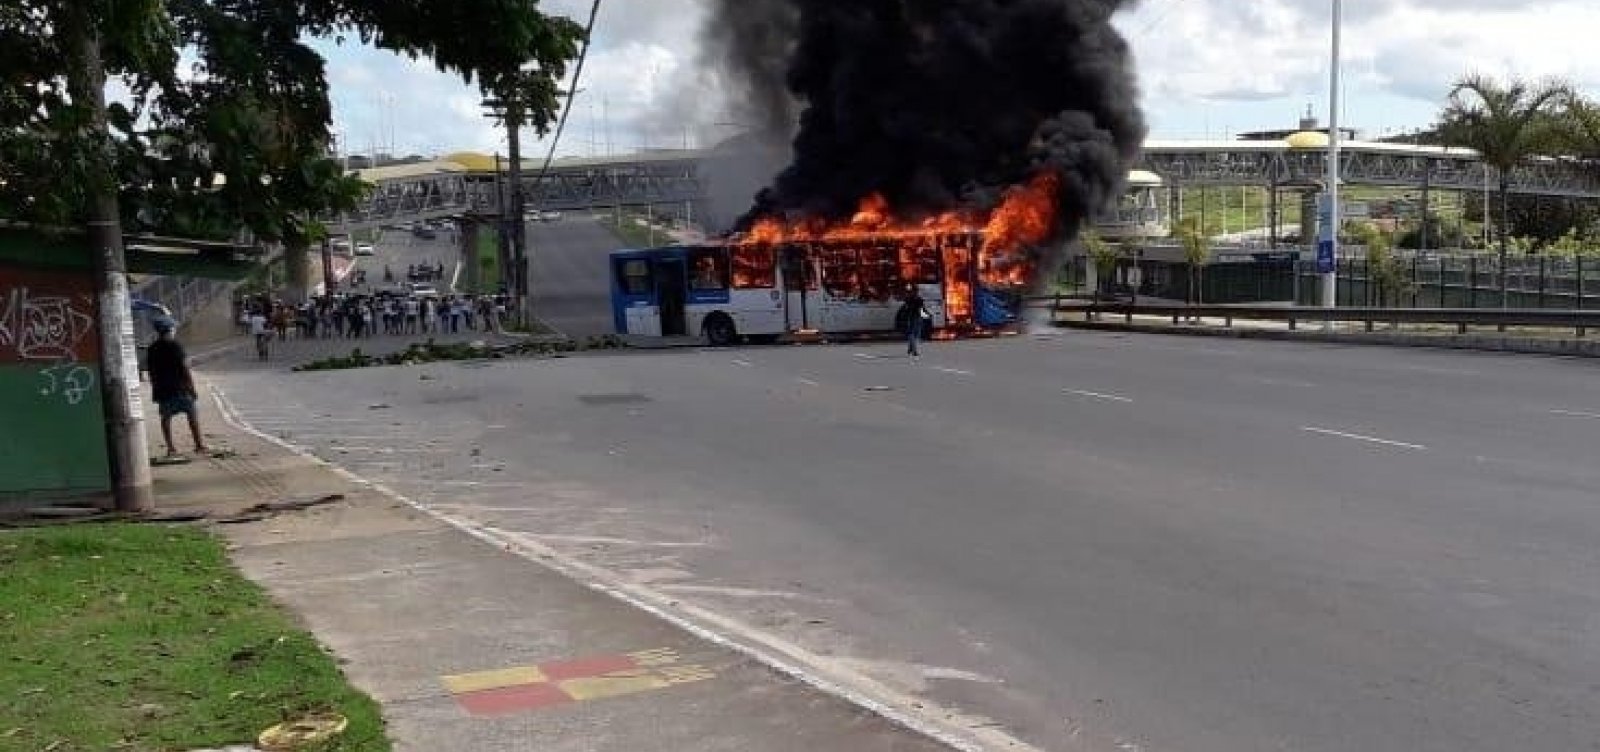 Manifestantes ateiam fogo em ônibus atravessado na Paralela